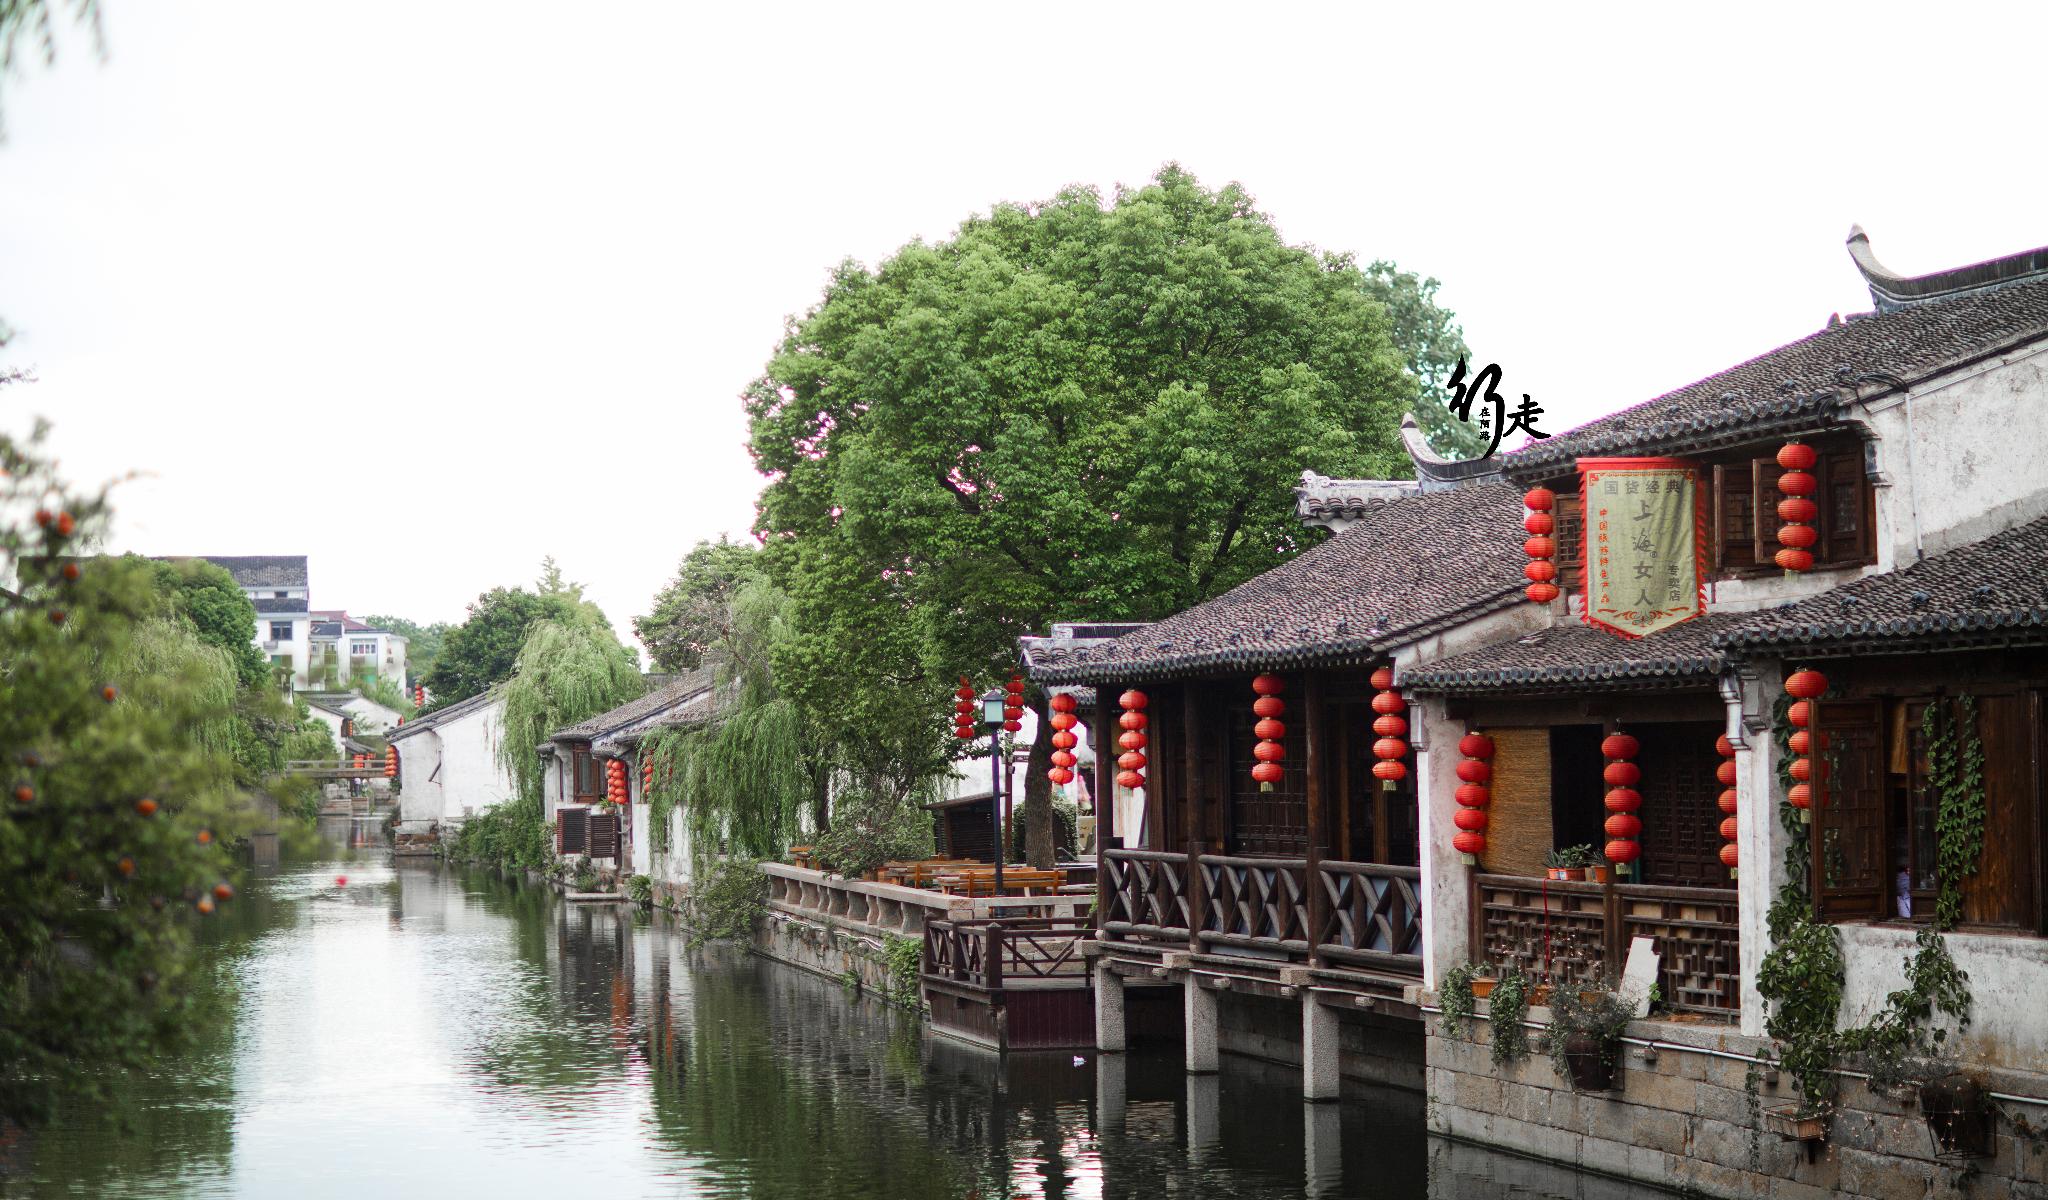 不一样的江南古镇:孝义持家,名人辈出,中国最美村镇之一